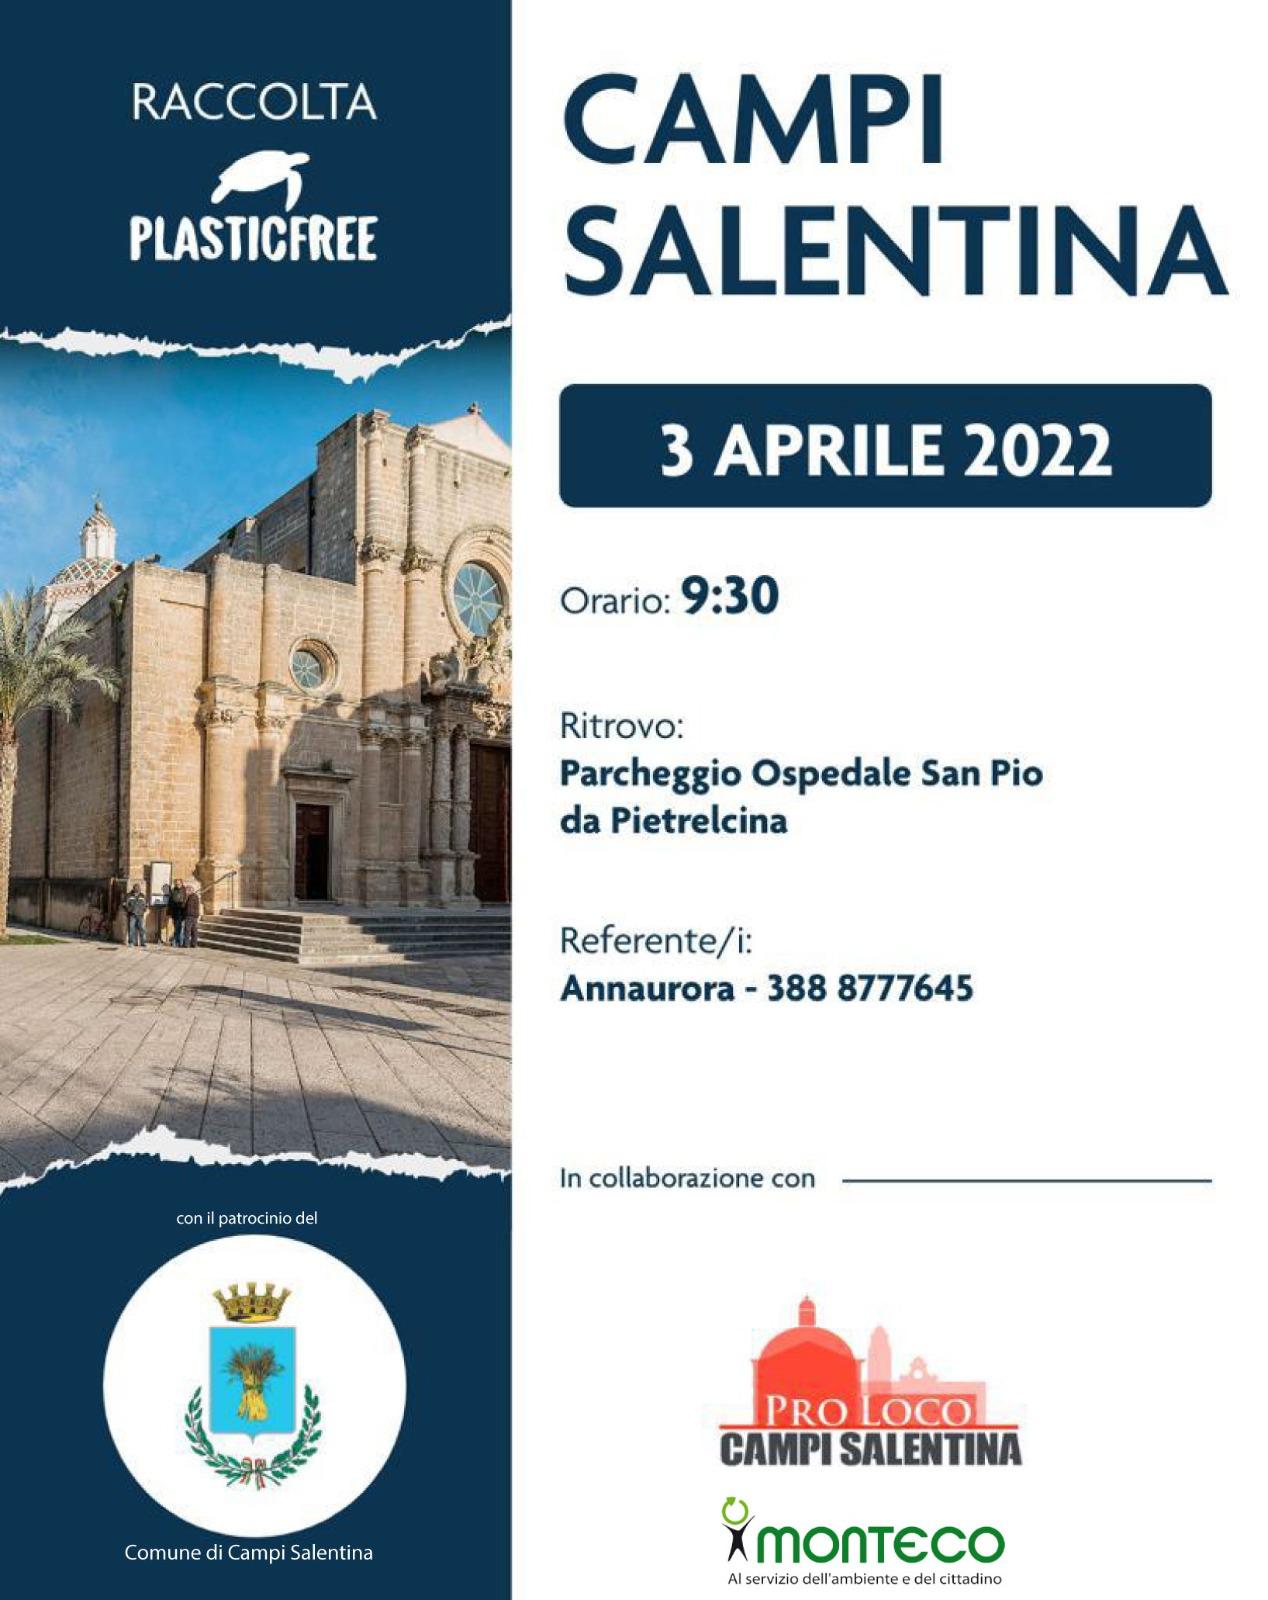 Campi Salentina. Giornata Ecologica PlasticFree 2022: ritrovo Domenica 3 Aprile ore 9:30